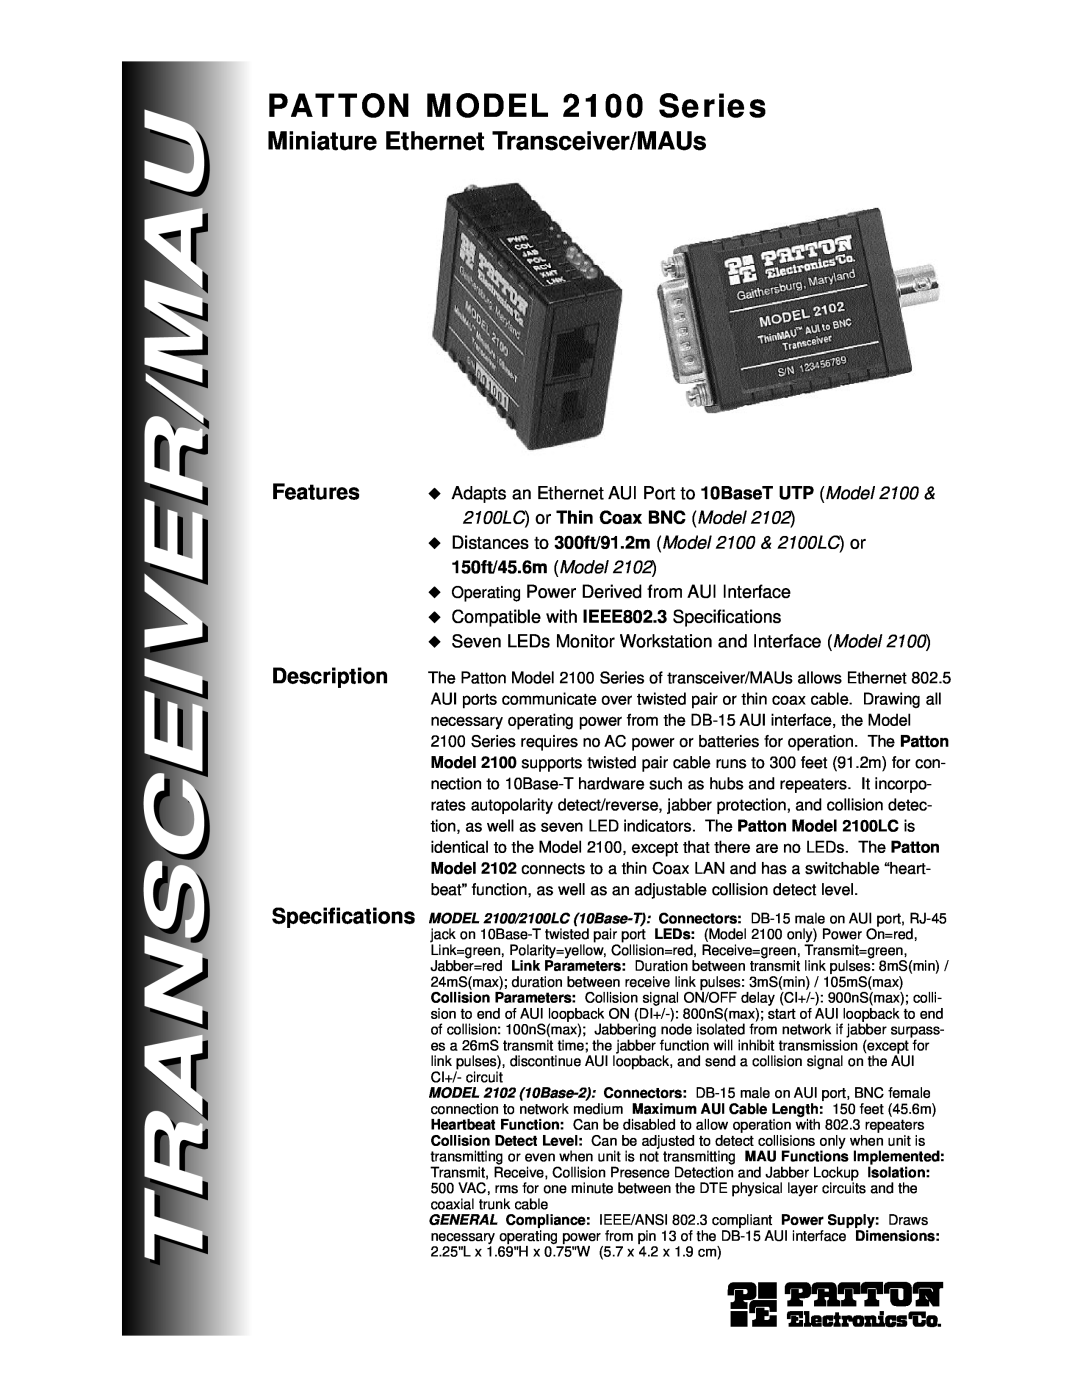 Patton electronic specifications PATTON MODEL 2100 Series, Miniature Ethernet Transceiver/MAUs, Features, Description 